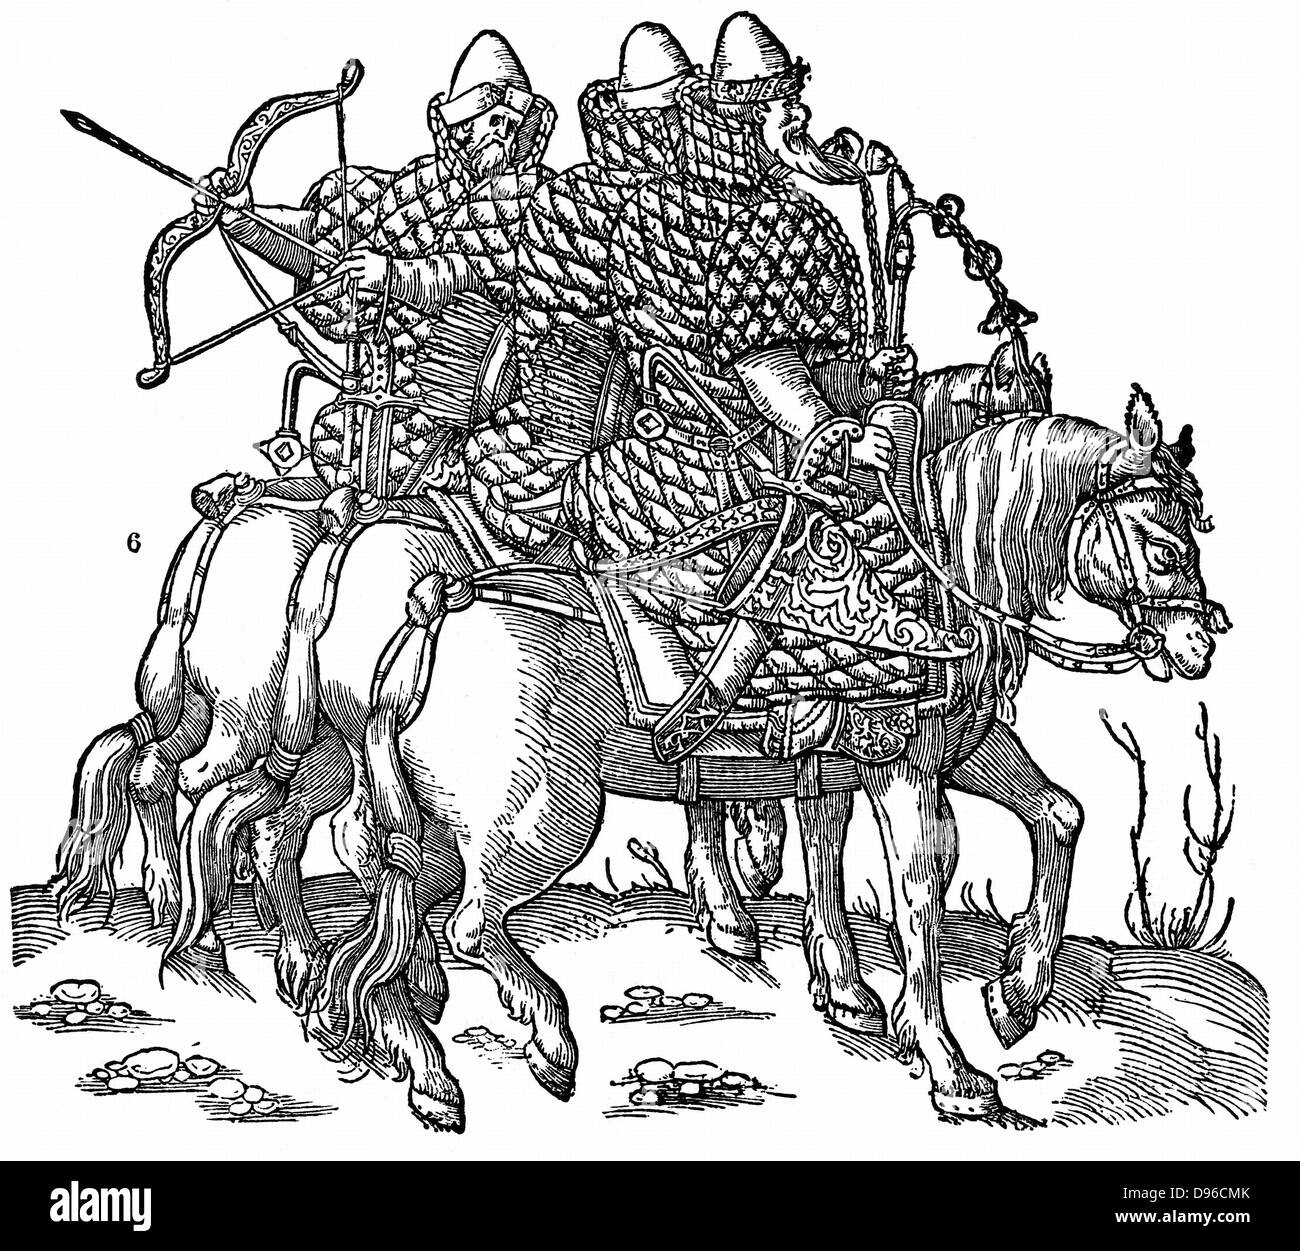 La muscovite monté guerriers équipés avec des arcs et des flèches, des épées et des armures matelassées. Gravure sur bois, 1556. Banque D'Images